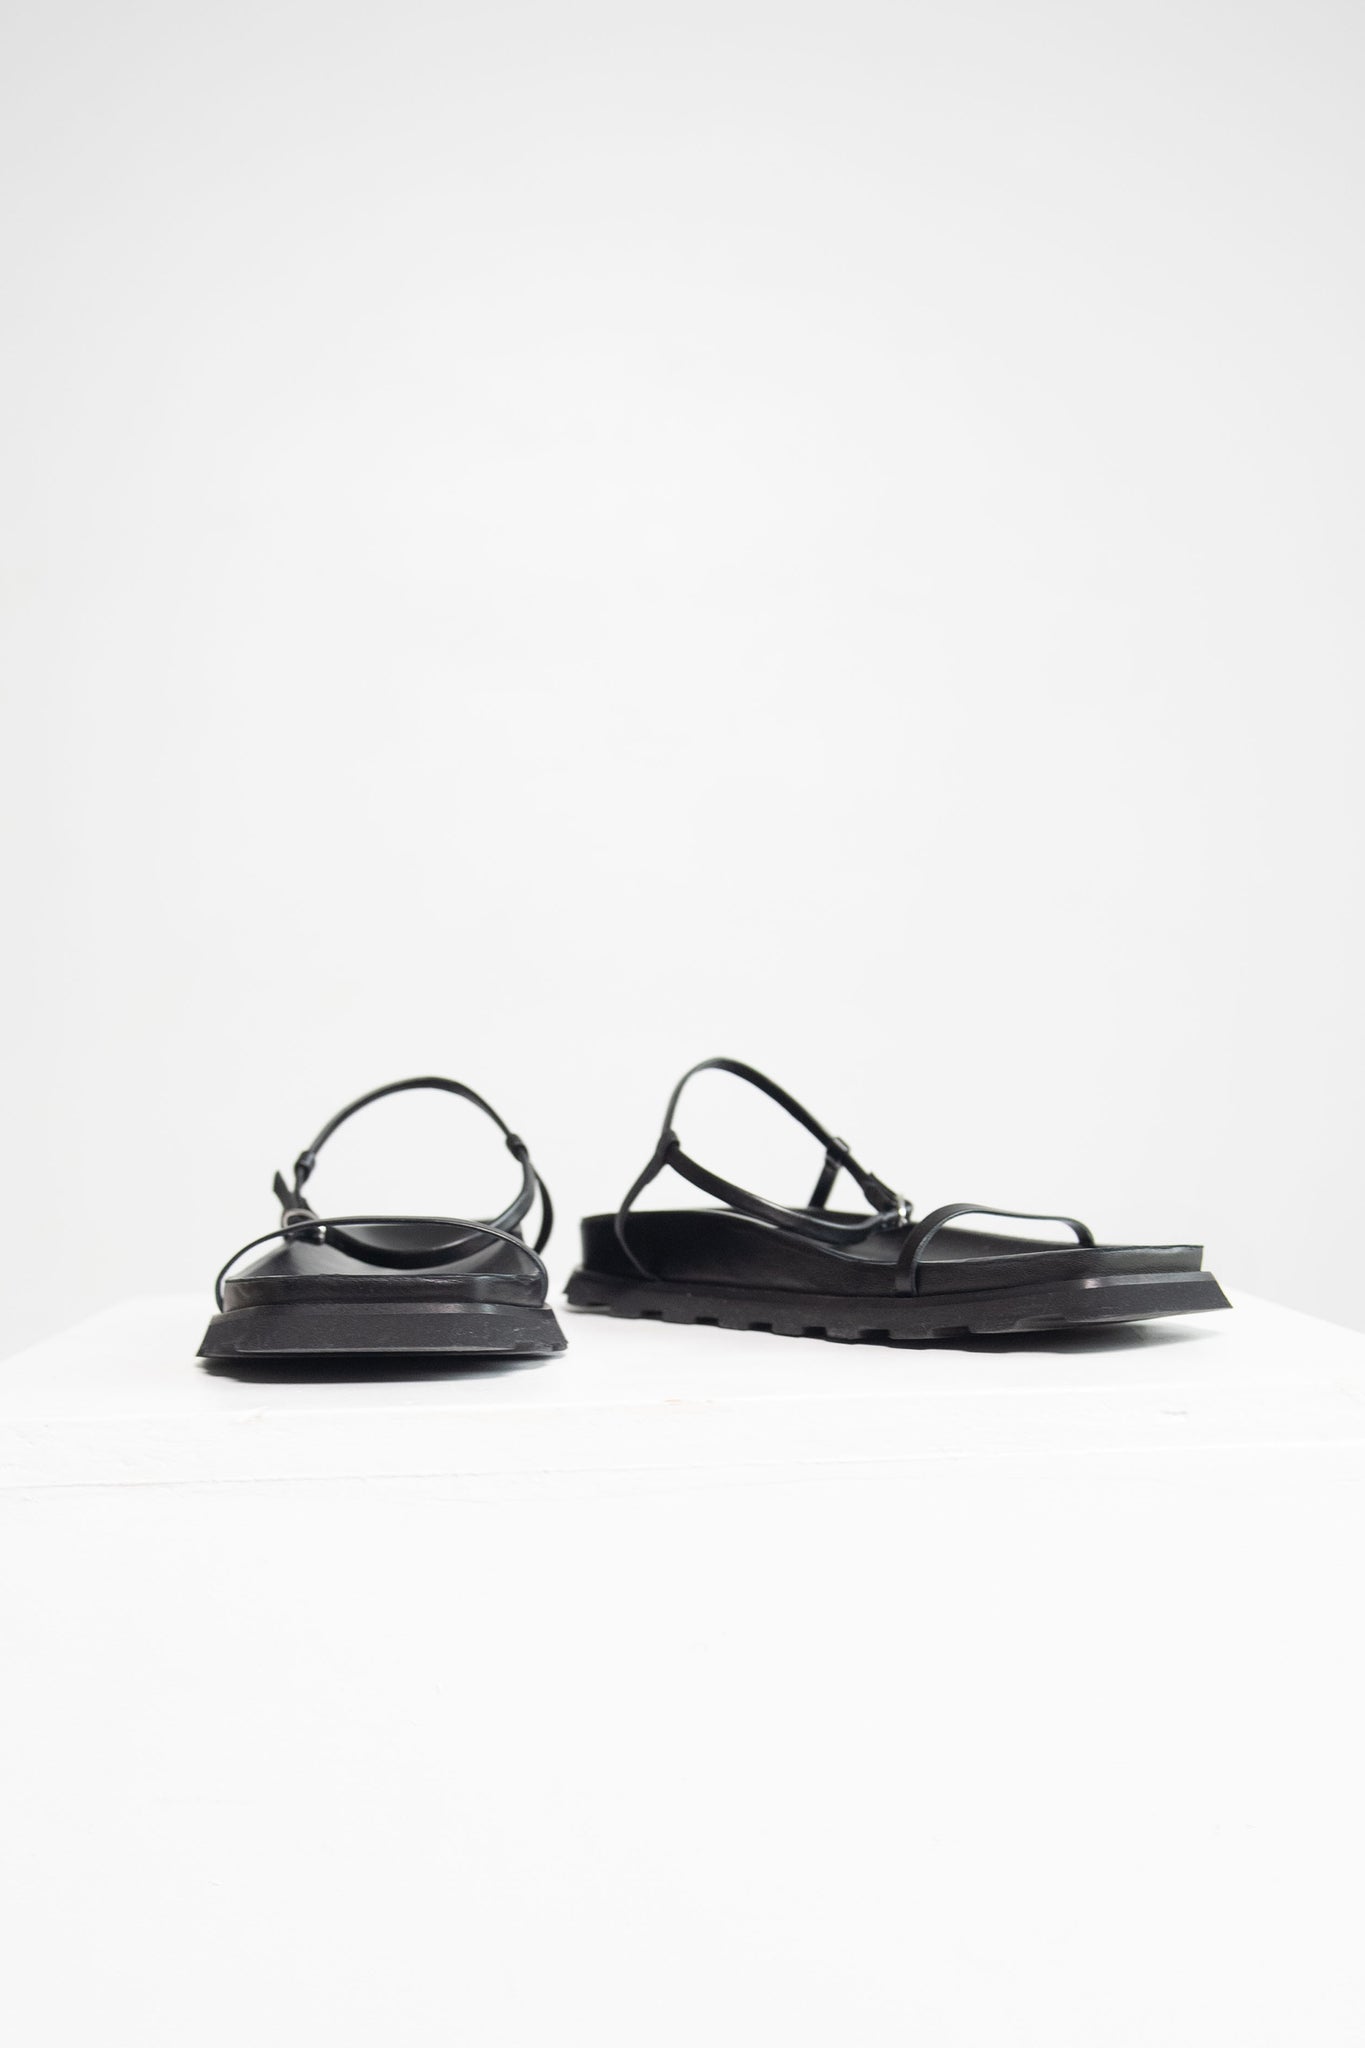 proenza schouler - Forma Sandals, Black